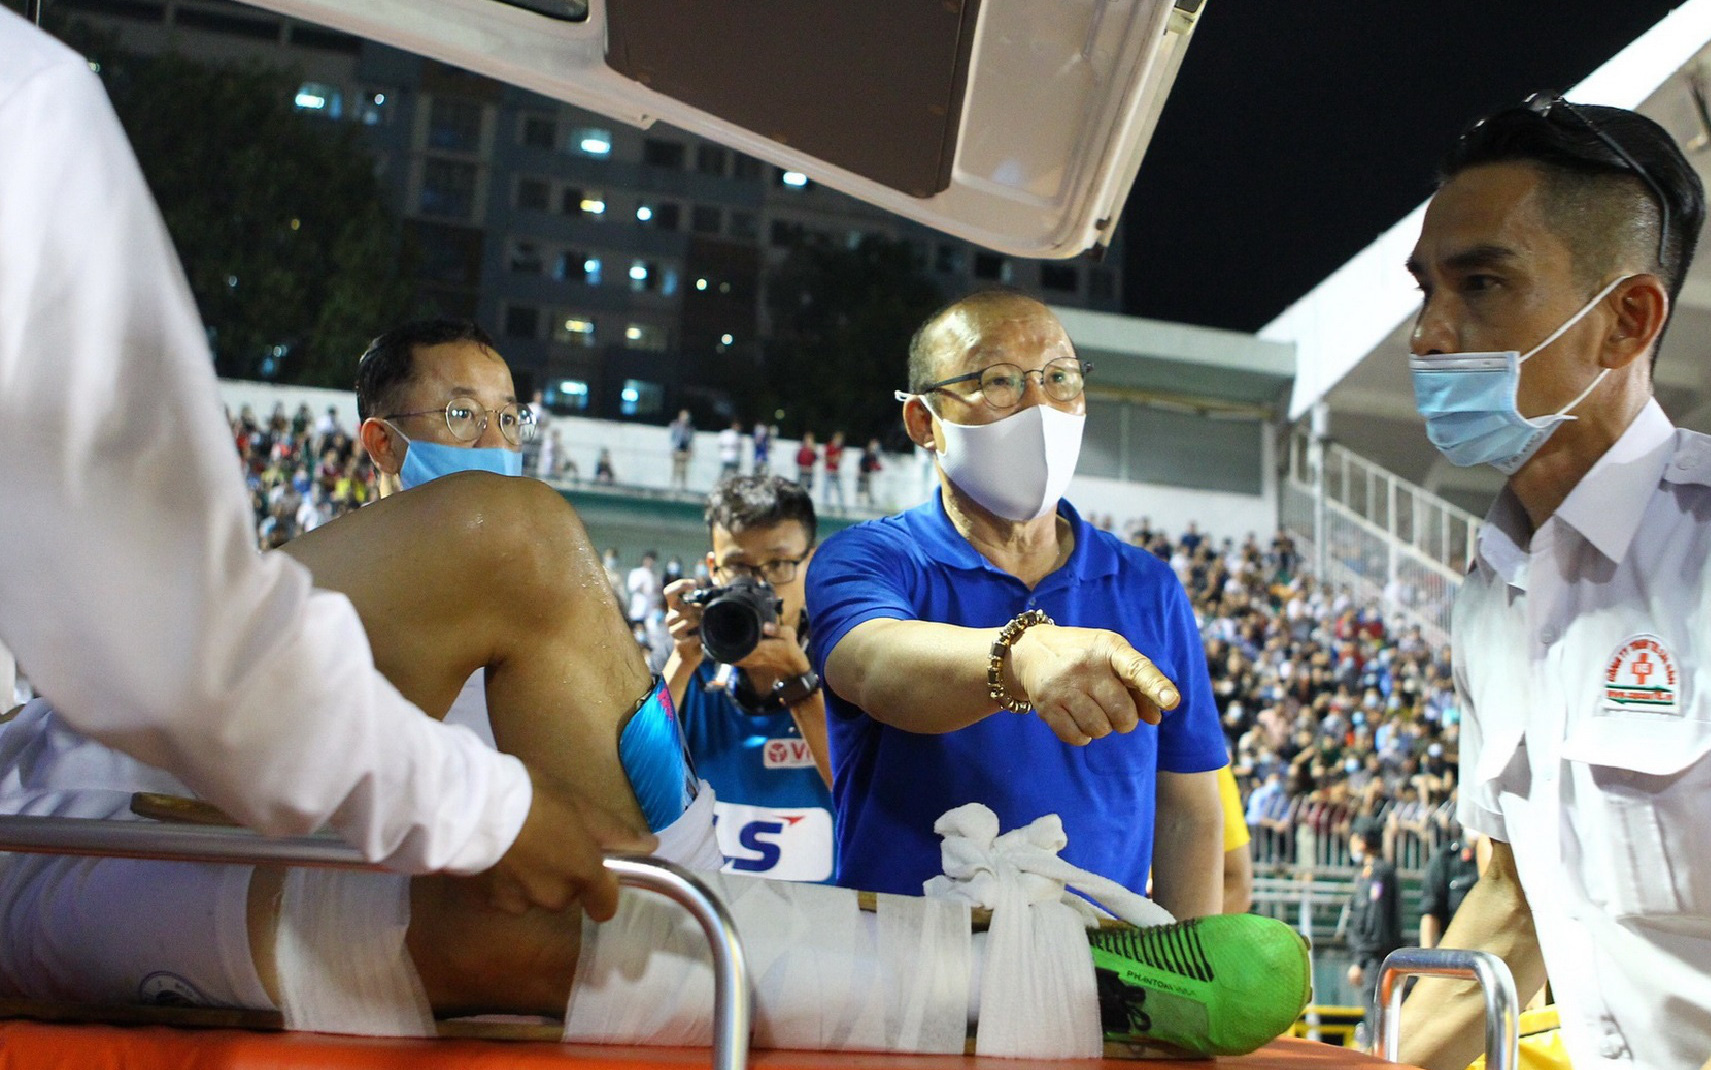 HLV Park rời hàng ghế VIP sau pha vào bóng ghê rợn khiến Hùng Dũng có nguy cơ gãy chân